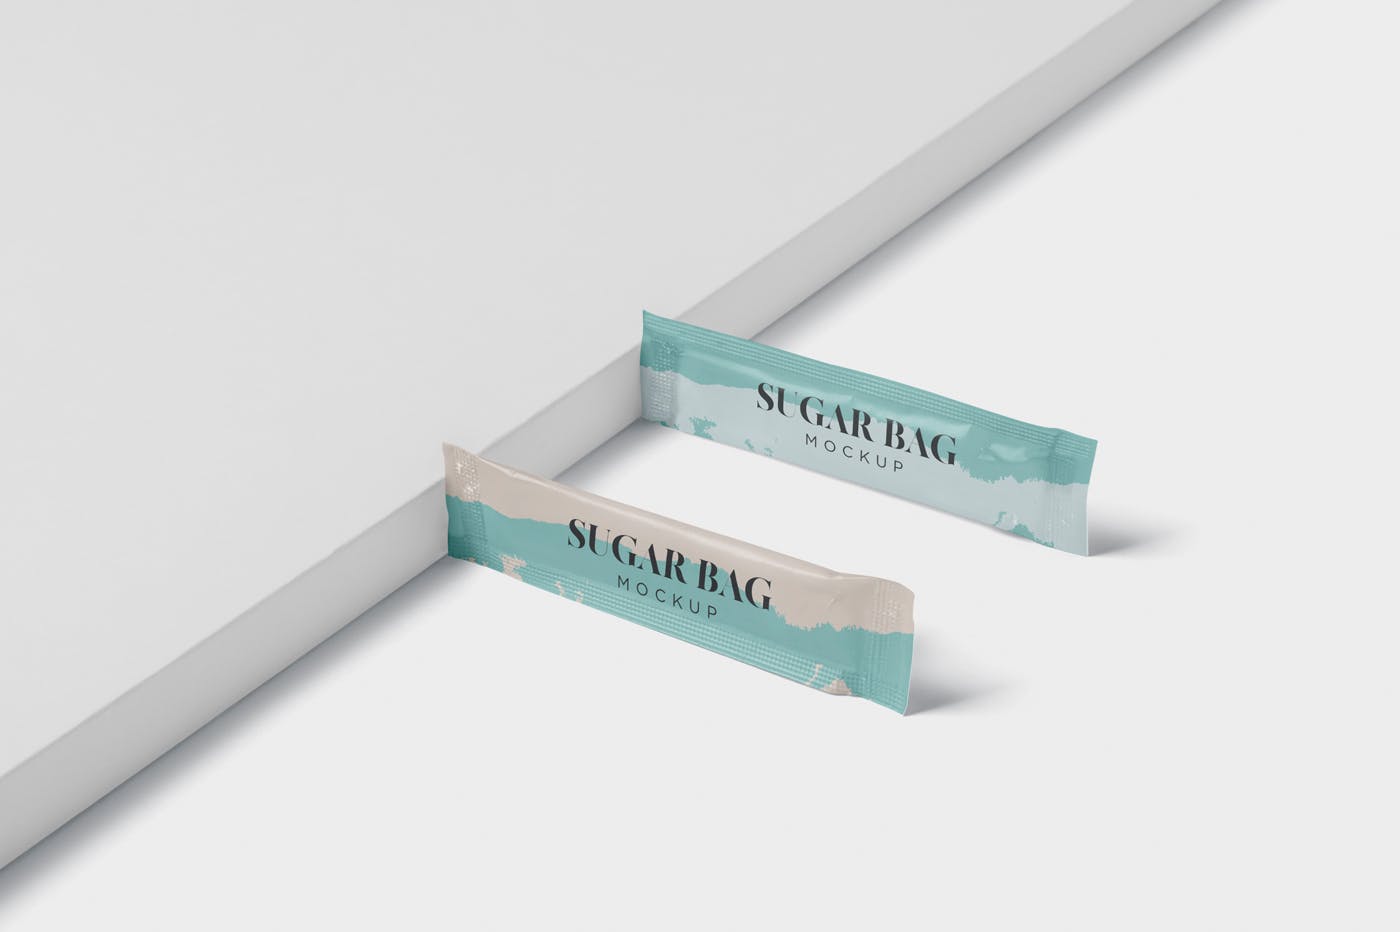 白砂糖长条包装纸袋外观设计图样机 Sugar Bag Moc